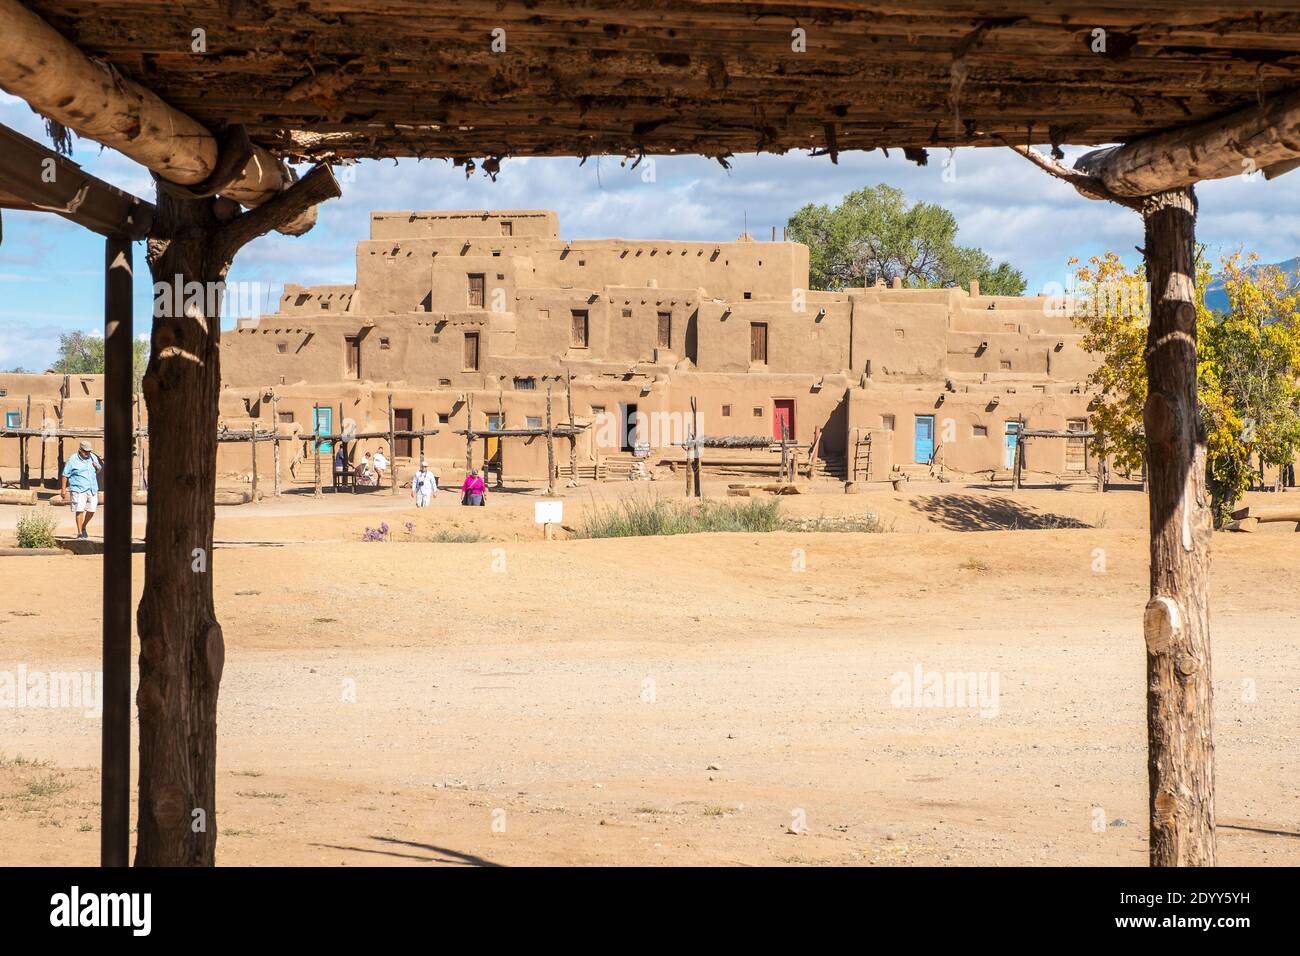 Le village historique d'adobe amérindien de Taos Pueblo, Nouveau-Mexique, Etats-Unis. Un site classé au patrimoine mondial de l'UNESCO. Banque D'Images